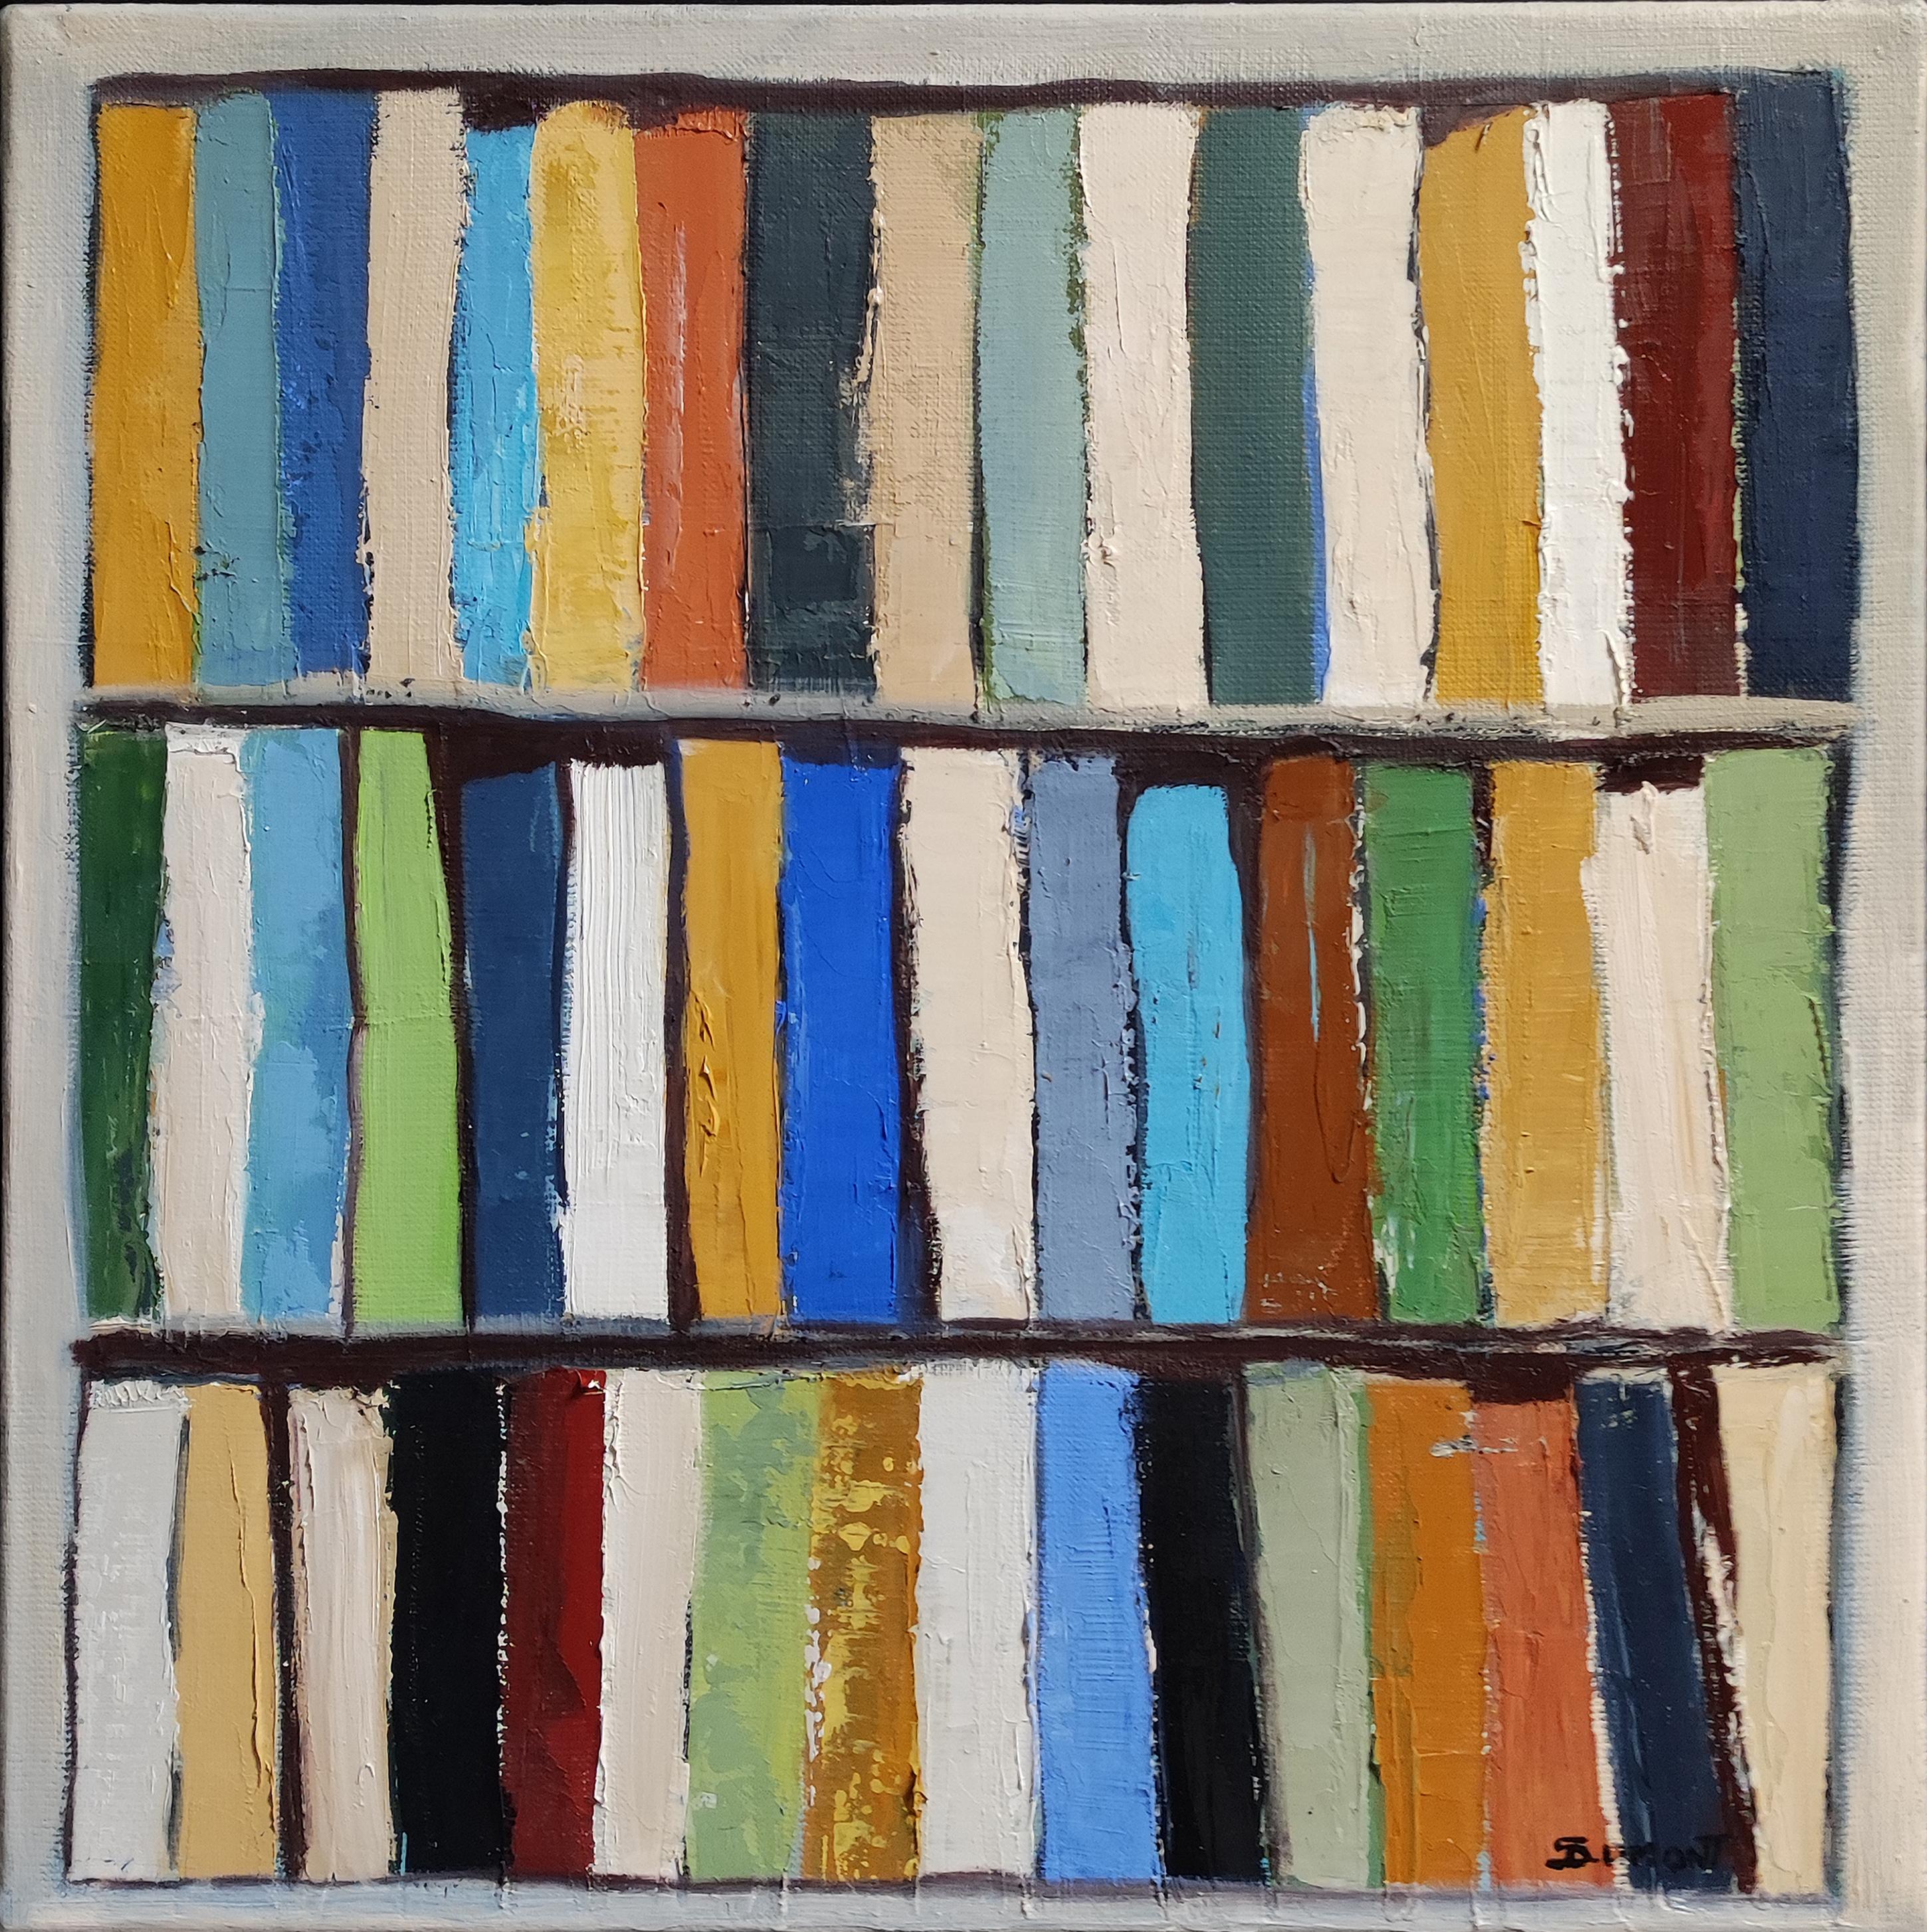 Gamme litteraire, Abstrakt, Bibliothek, Französisch, Minimalismus, Moderne, Expressionismus – Painting von SOPHIE DUMONT